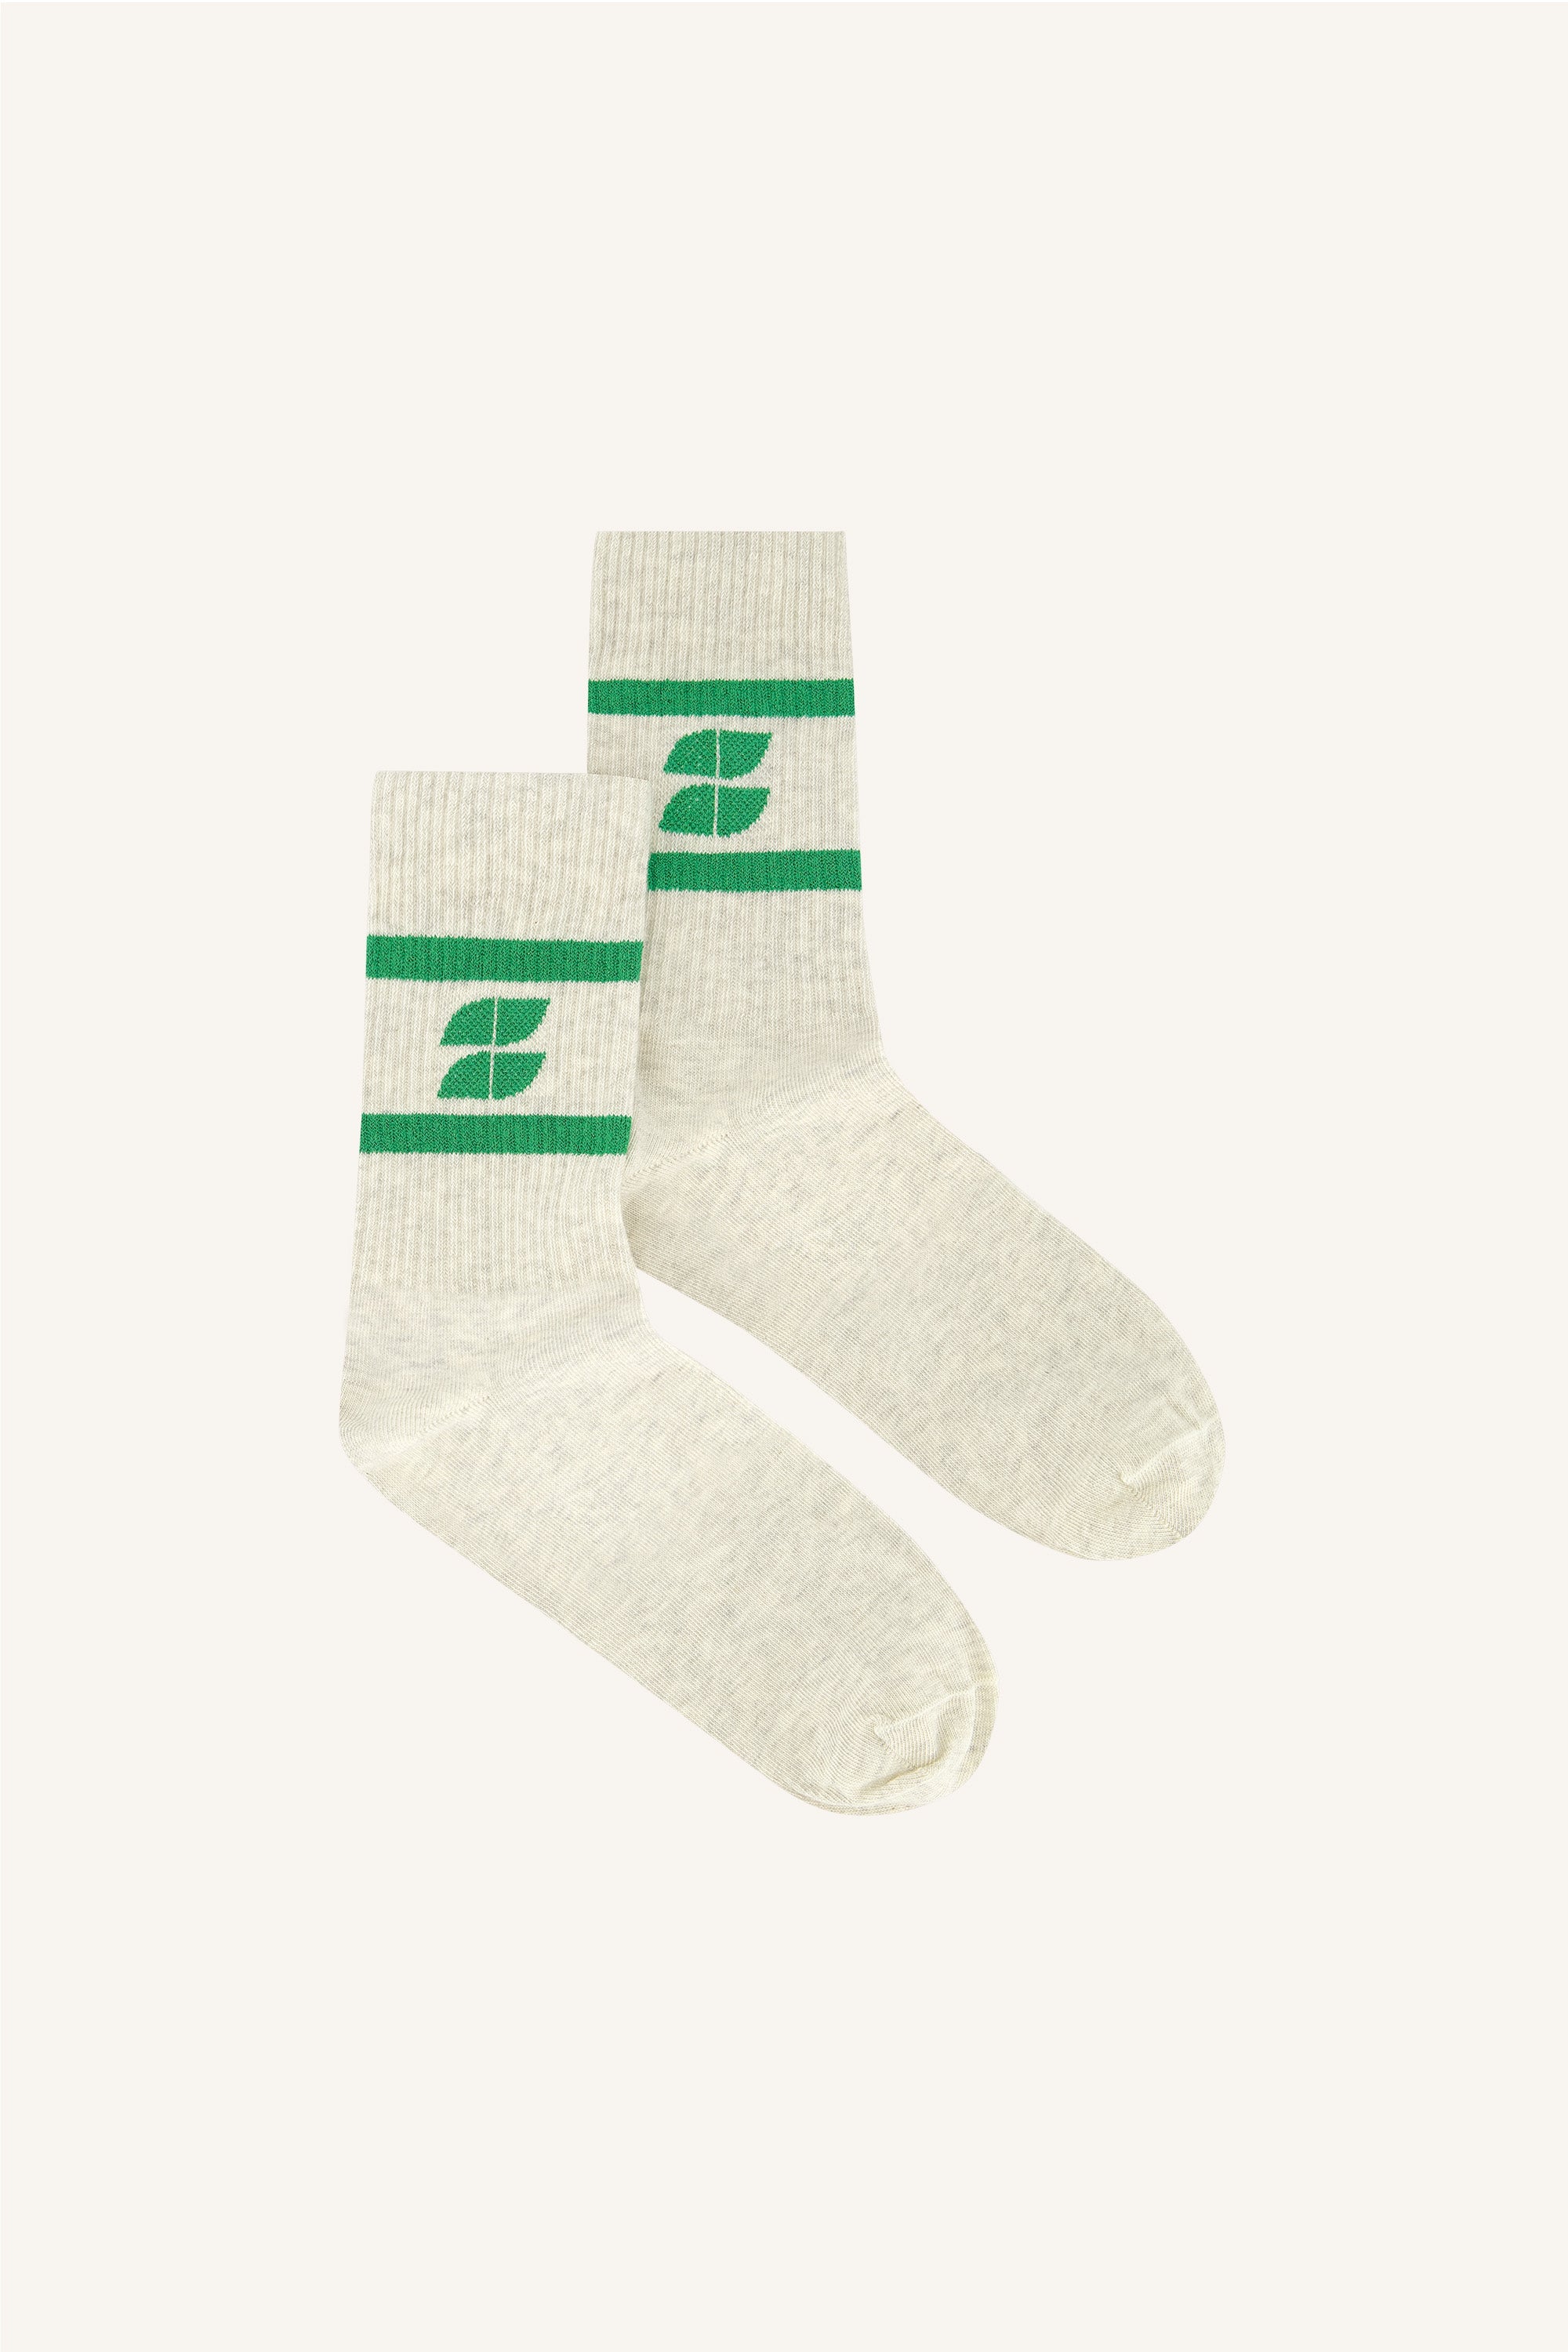 logo sparkle socks | evergreen